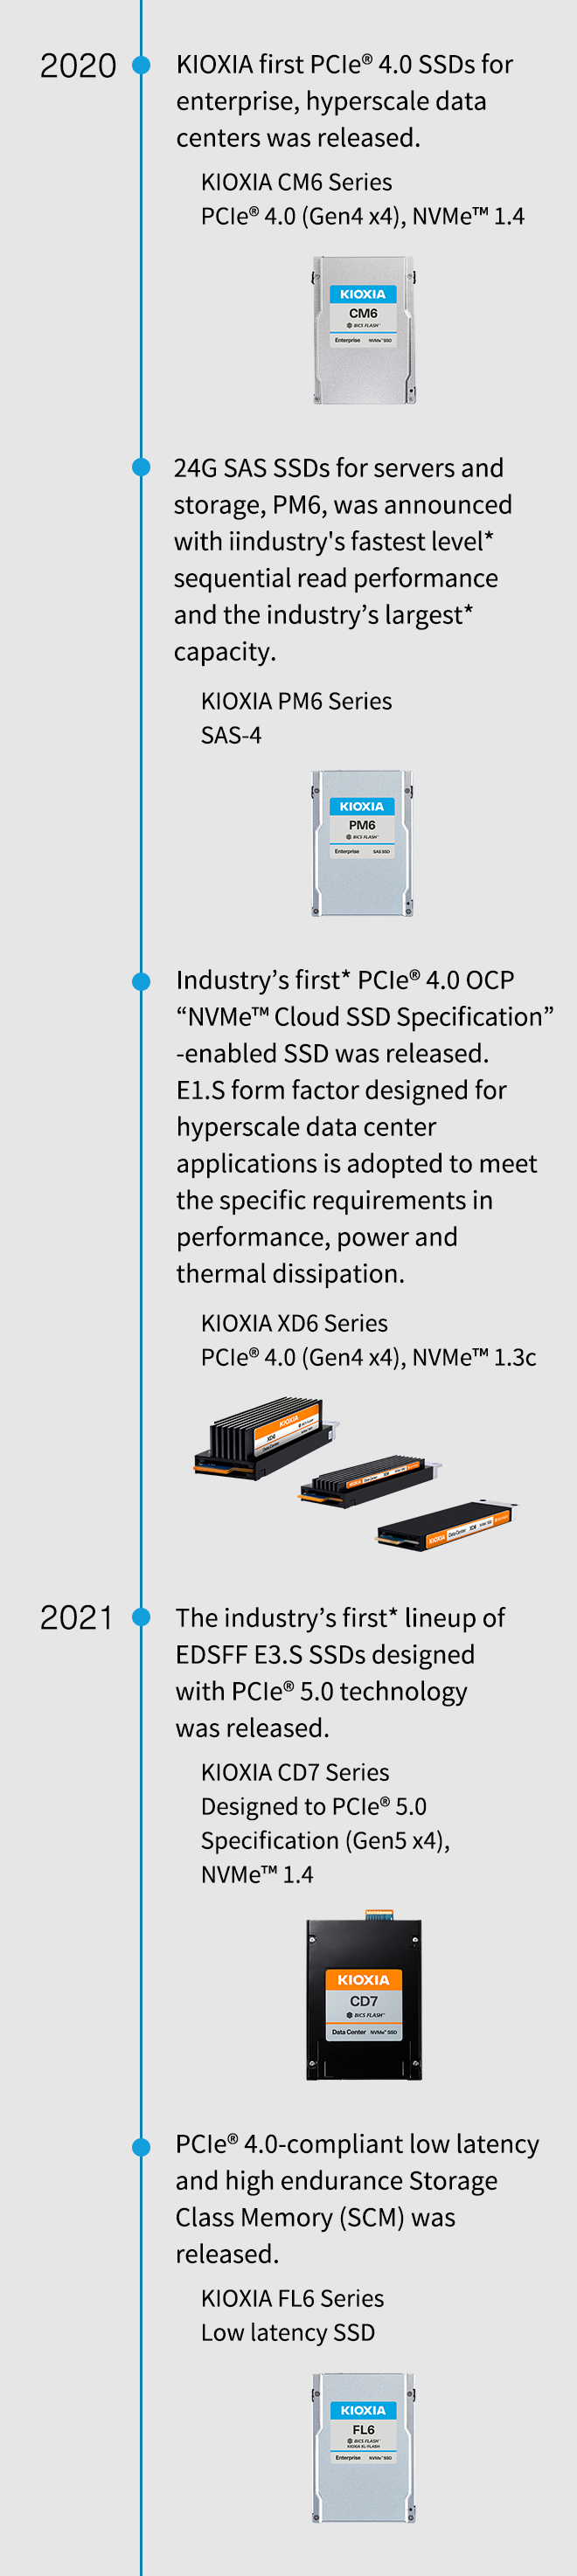 2020. Κυκλοφόρησαν οι πρώτοι δίσκοι PCIe® 4.0 SSD της KIOXIA για επιχειρήσεις και κέντρα δεδομένων υπερκλίμακας. Σειρά KIOXIA CM6 PCIe® 4.0 (Gen4 x4), NVMe™ 1.4. Οι δίσκοι 24G SAS SSD για διακομιστές και αποθήκευση, PM6, ανακοινώθηκαν με το ταχύτερο επίπεδο* απόδοσης διαδοχικής ανάγνωσης του κλάδου και τη μεγαλύτερη* χωρητικότητα του κλάδου. Σειρά KIOXIA PM6 SAS-4. Κυκλοφόρησε ο πρώτος* δίσκος SSD με δυνατότητα υποστήριξης PCIe ® 4.0 OCP «NVMe™ Cloud Specification SSD». Ο συντελεστής μορφής E1.S που έχει σχεδιαστεί για εφαρμογές κέντρου δεδομένων υπερκλίμακας υιοθετείται για να πληροί τις ειδικές απαιτήσεις στην απόδοση, την ισχύ και τη θερμική διάχυση. Σειρά KIOXIA XD6 PCIe® 4.0 (Gen4 x4), NVMe™ 1.3c. 2021. Κυκλοφόρησε η πρώτη* σειρά EDSFF E3.S SSD στον κλάδο που σχεδιάστηκε με τεχνολογία PCIe® 5.0. Σειρά KIOXIA CD7 σχεδιασμένη για την προδιαγραφή PCIe® 5.0 (Gen5 x4), NVMe™ 1.4. Κυκλοφόρησε μνήμη κατηγορίας αποθήκευσης (SCM) χαμηλής καθυστέρησης και υψηλής αντοχής, συμβατή με PCIe® 4.0. Σειρά KIOXIA FL6 Χαμηλή καθυστέρηση SSD